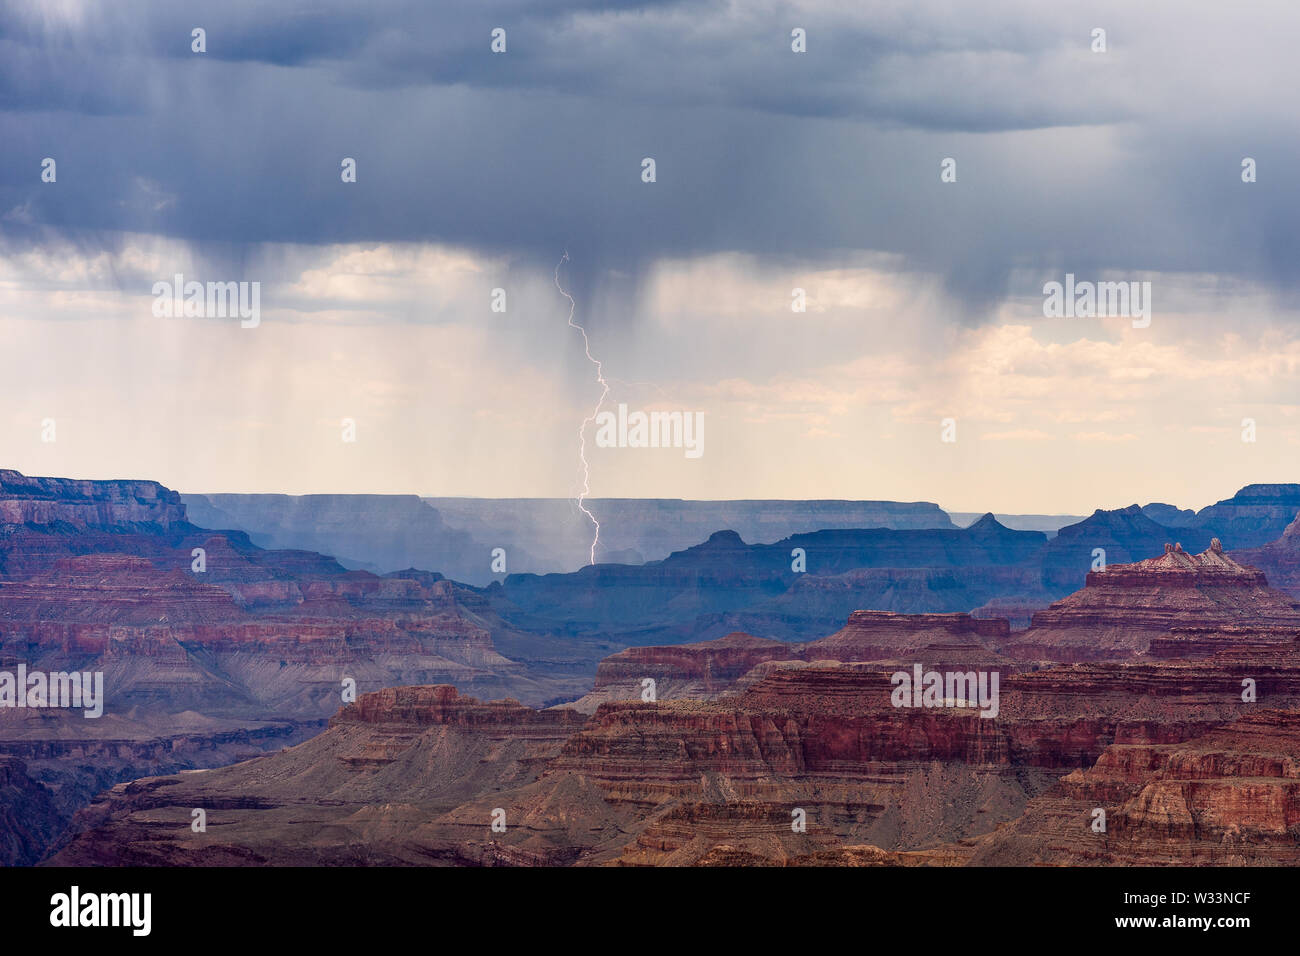 La foudre frappe à la suite d'une tempête qui traverse le Grand Canyon, vue depuis Navajo point, le parc national du Grand Canyon, Arizona, États-Unis Banque D'Images